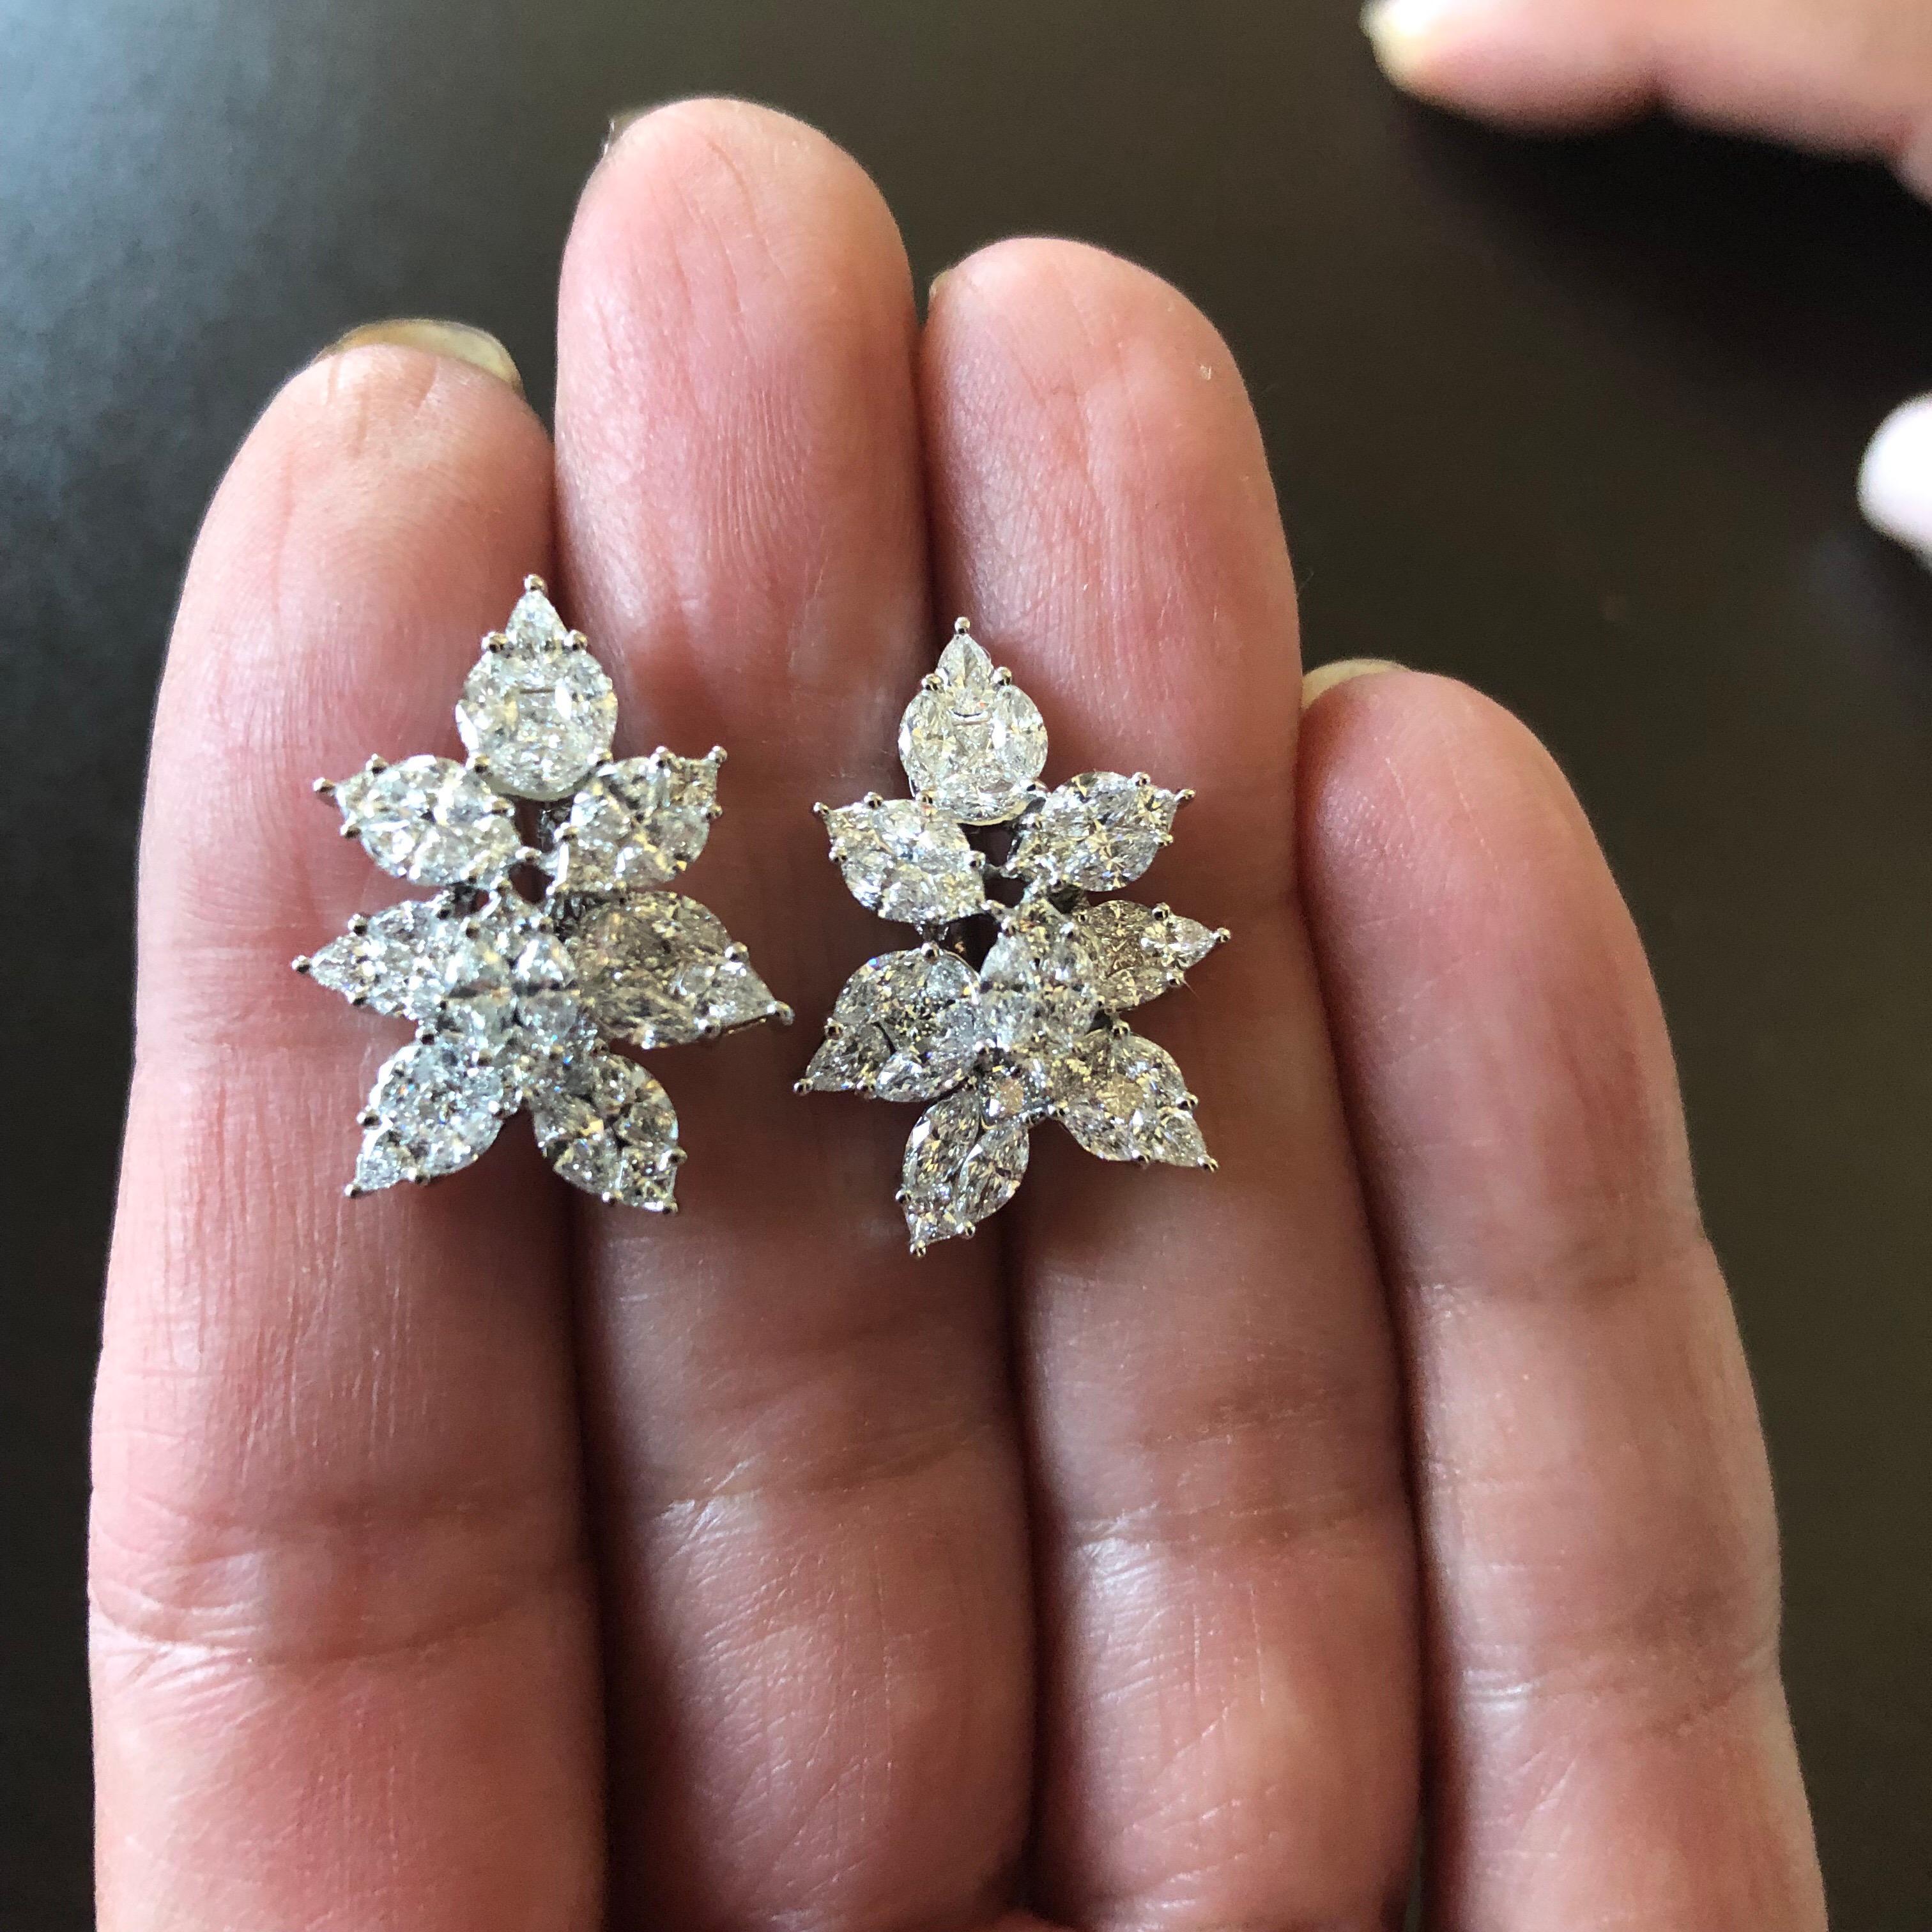 Modern 4 Carat Pear Shape Diamond Earrings For Sale